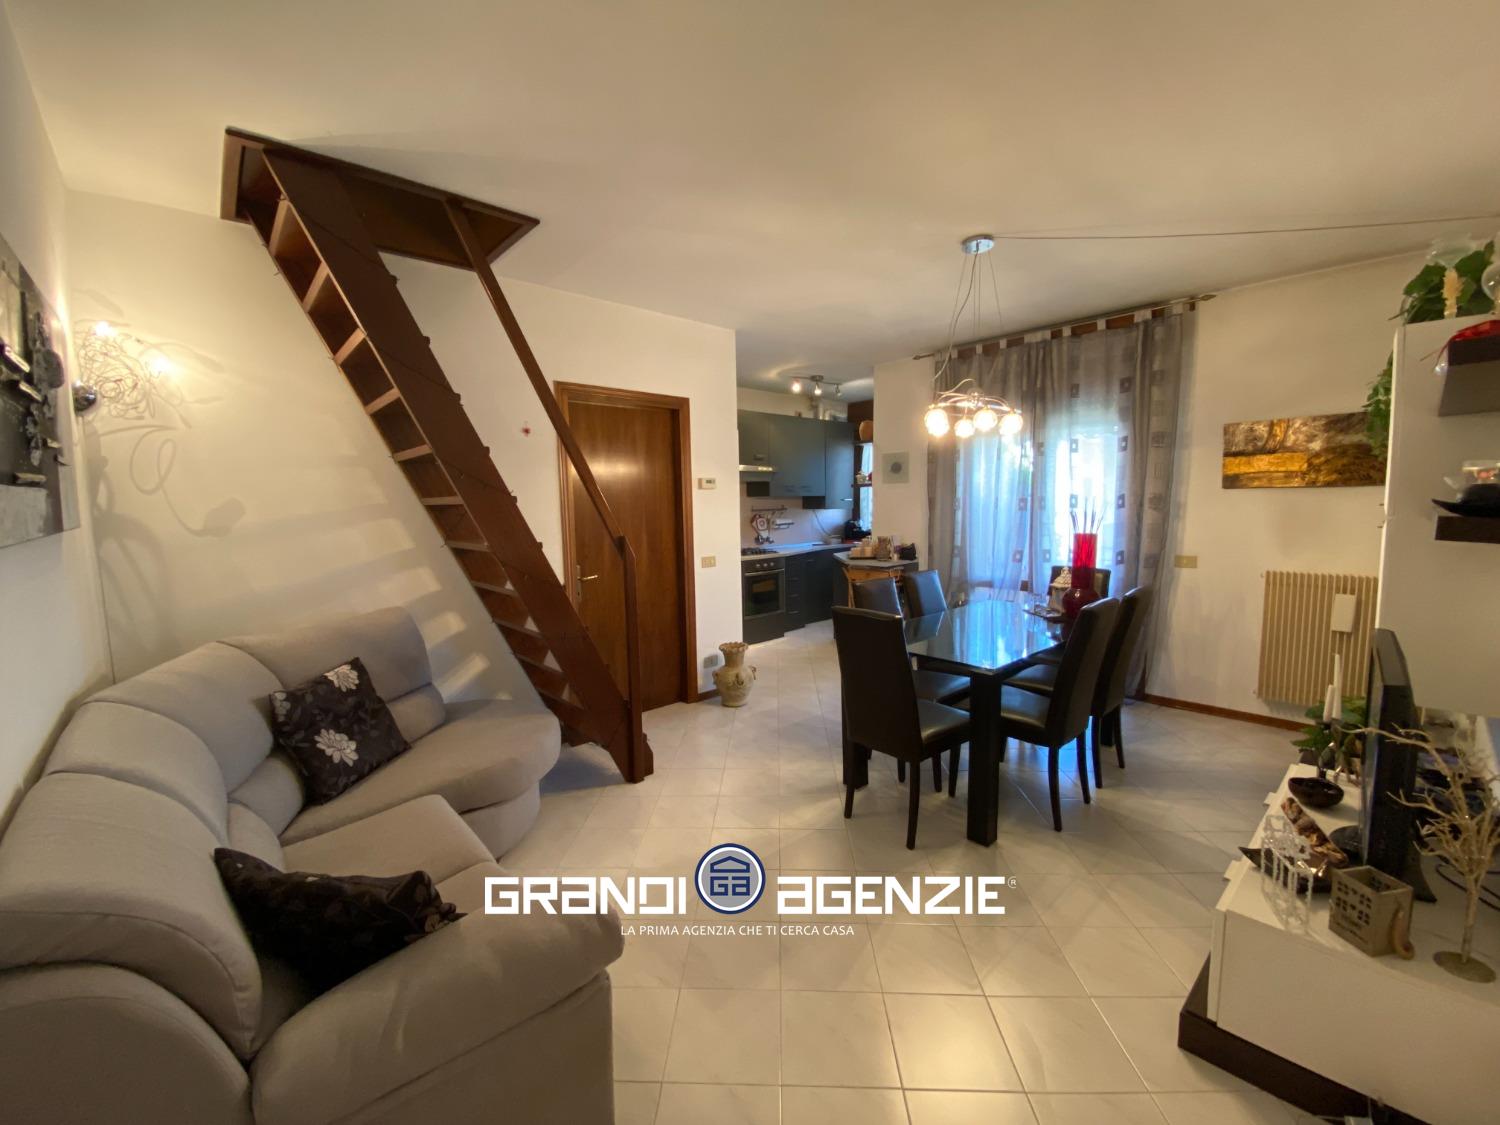 Appartamento in vendita a Preganziol, 2 locali, prezzo € 120.000 | CambioCasa.it